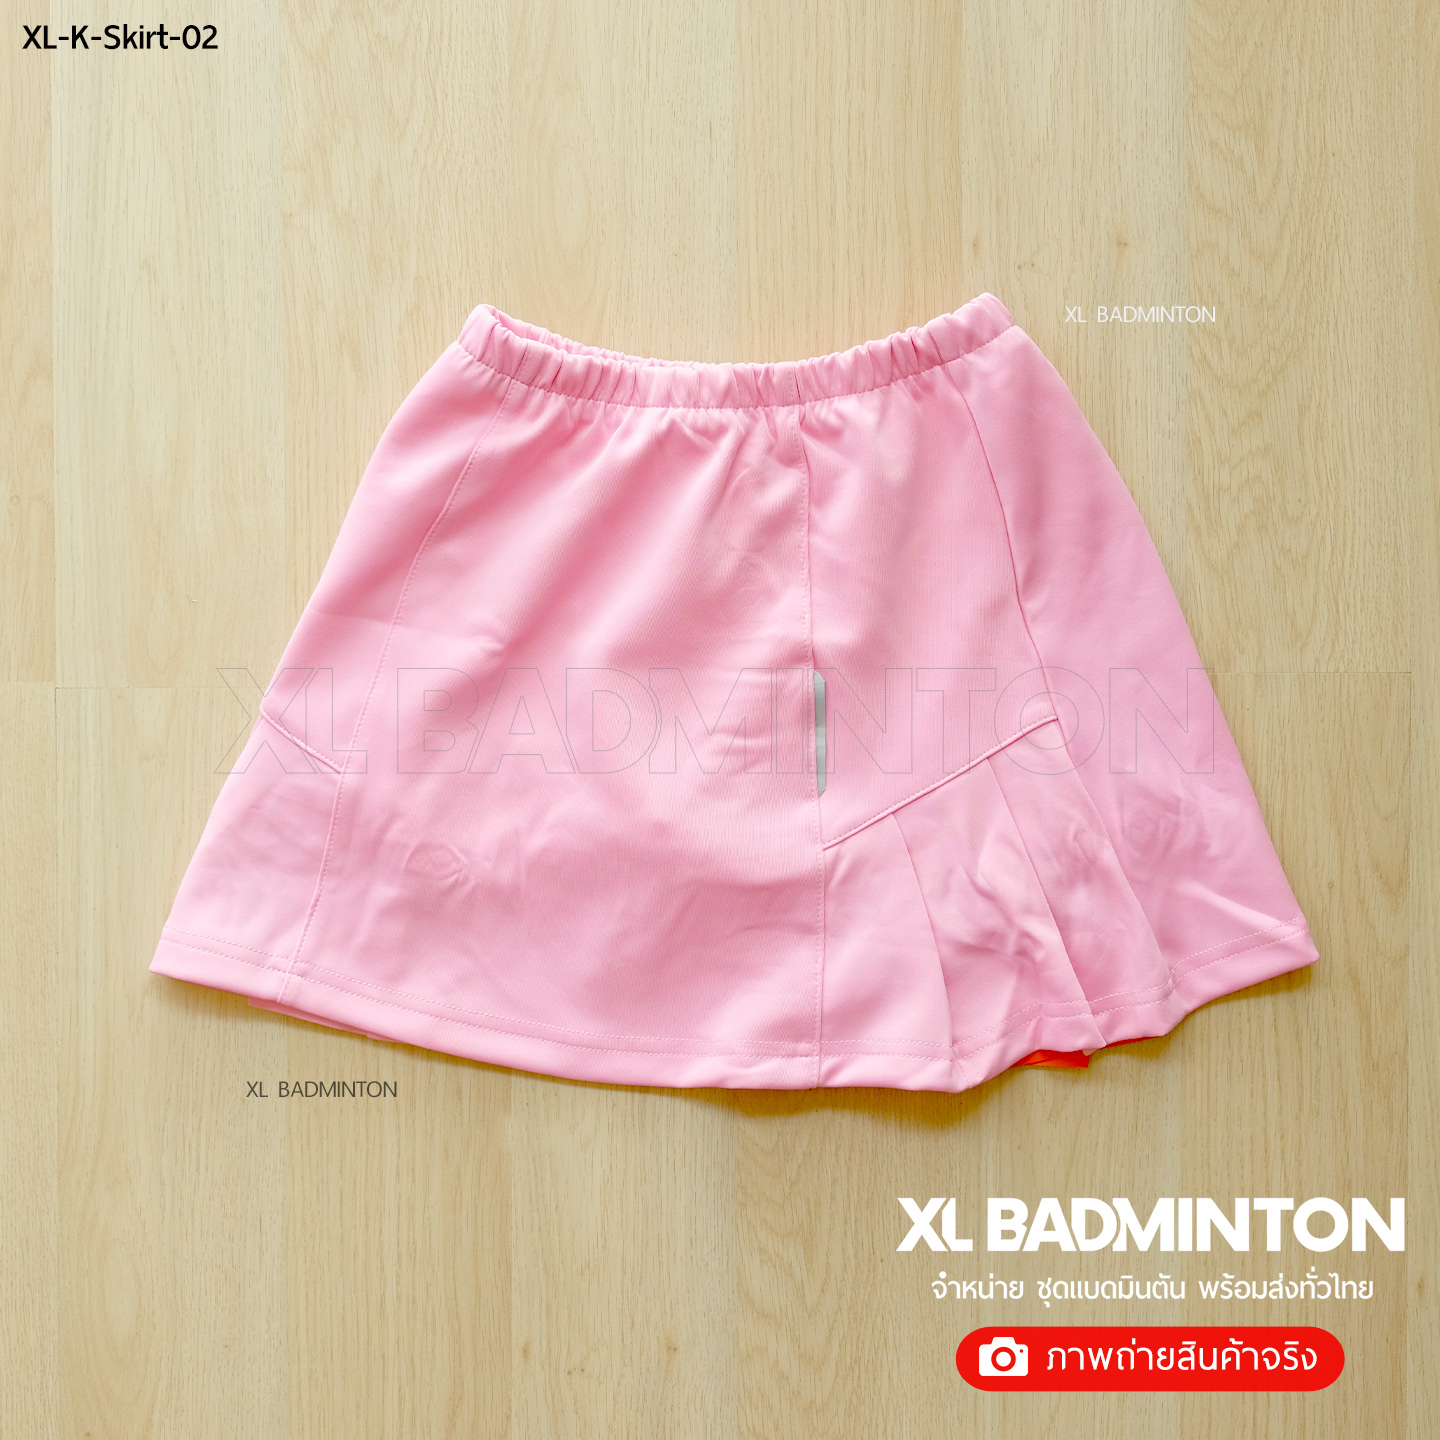 xl-k-skirt-02-pink-1